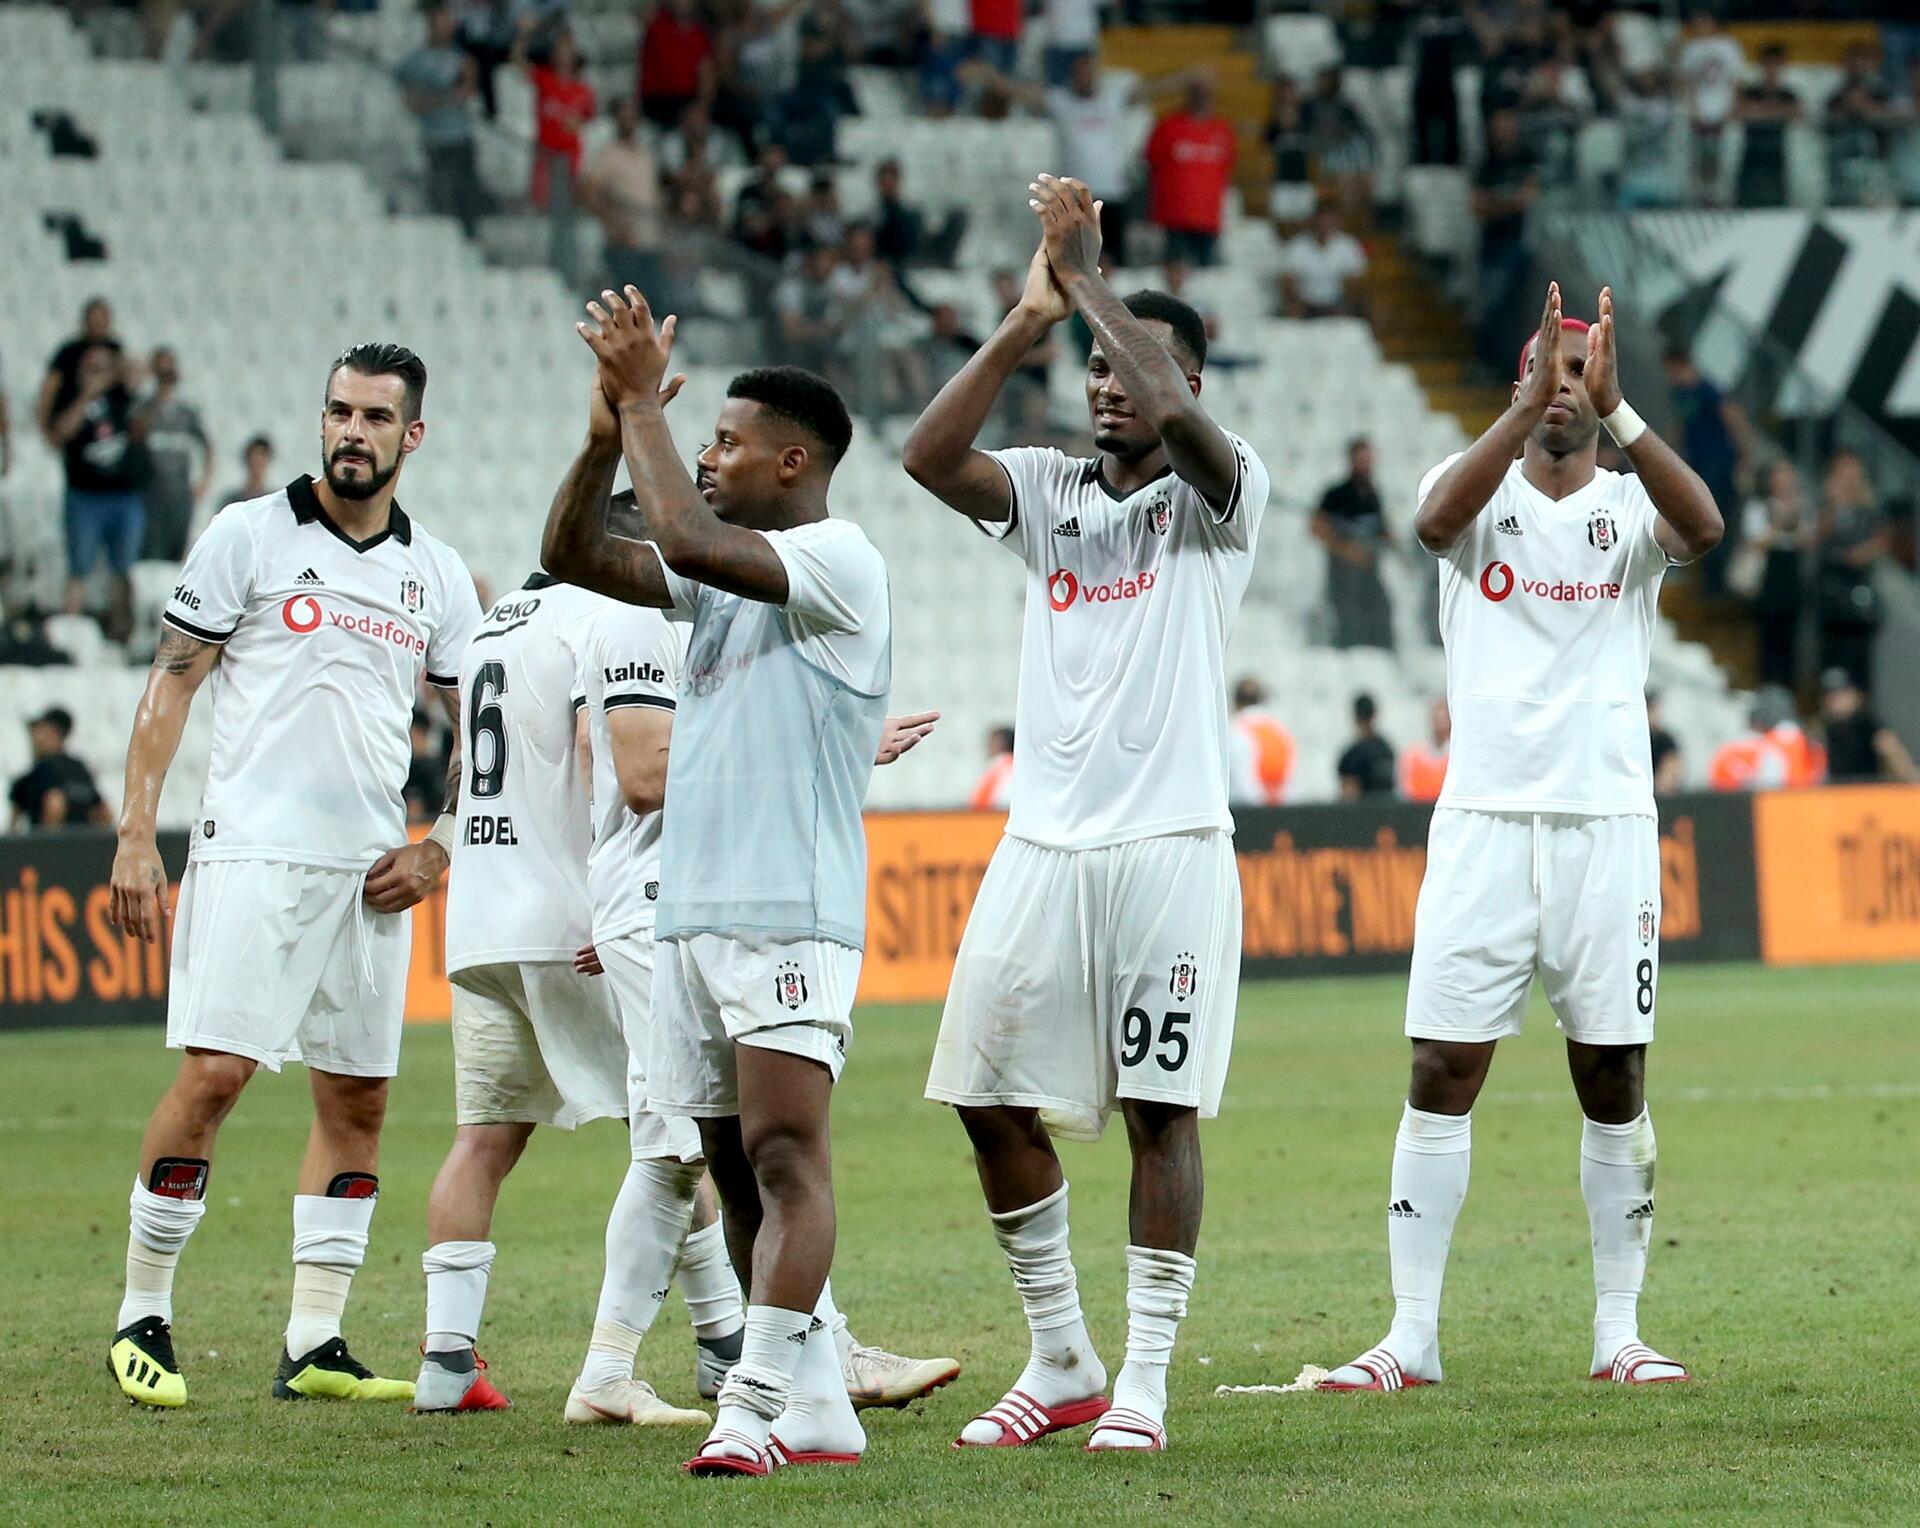 Beşiktaş edge LASK Linz out in Europa League quals - Turkish News